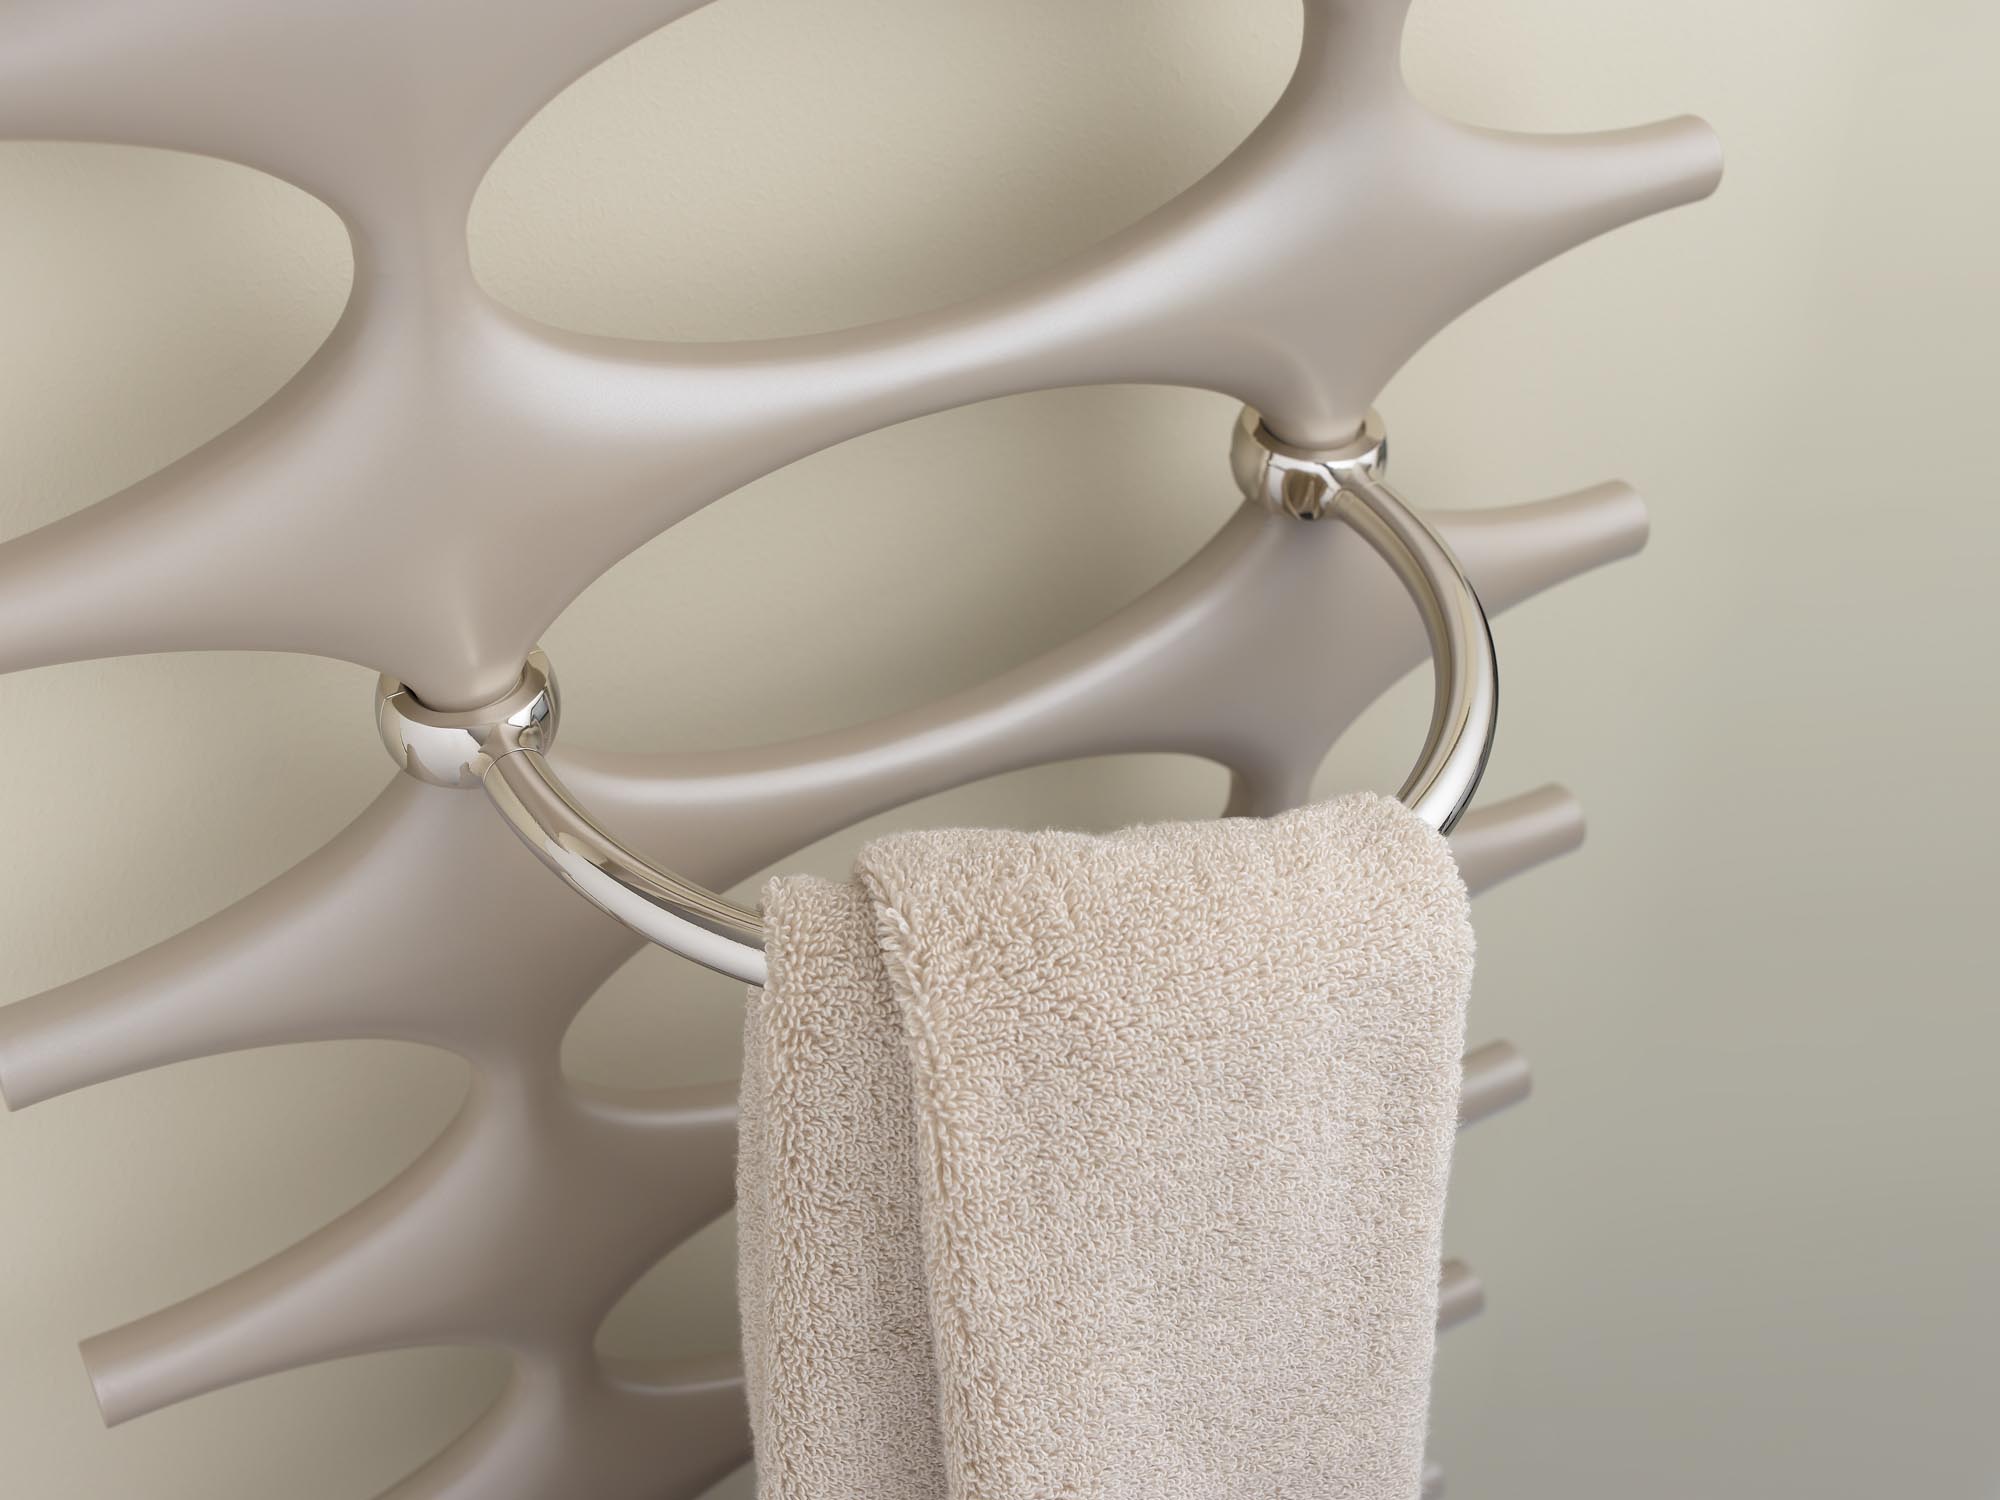 Radiateur design et de salle de bain Ideos de Kermi anneau porte-serviettes.